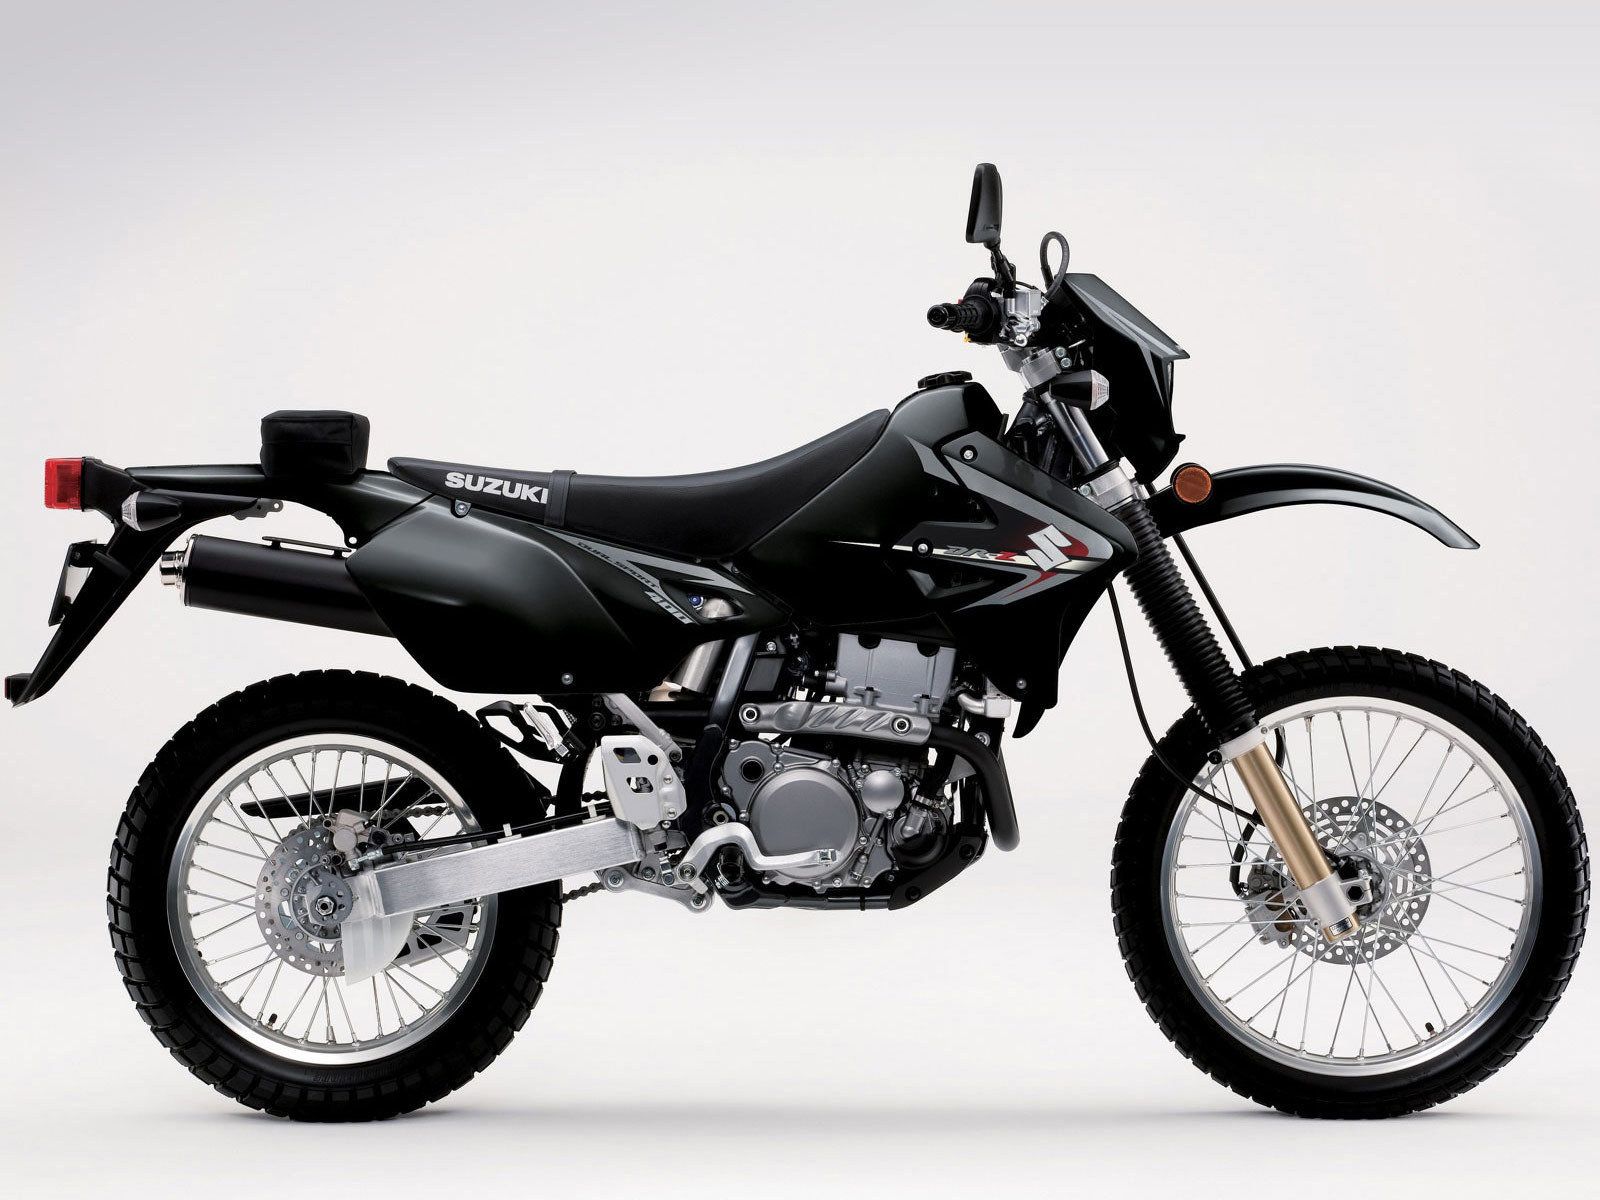 ¿Existe la moto ideal para R.Crossman? :-D - Página 4 2012-suzuki-dr-z400s-5_1600x0w